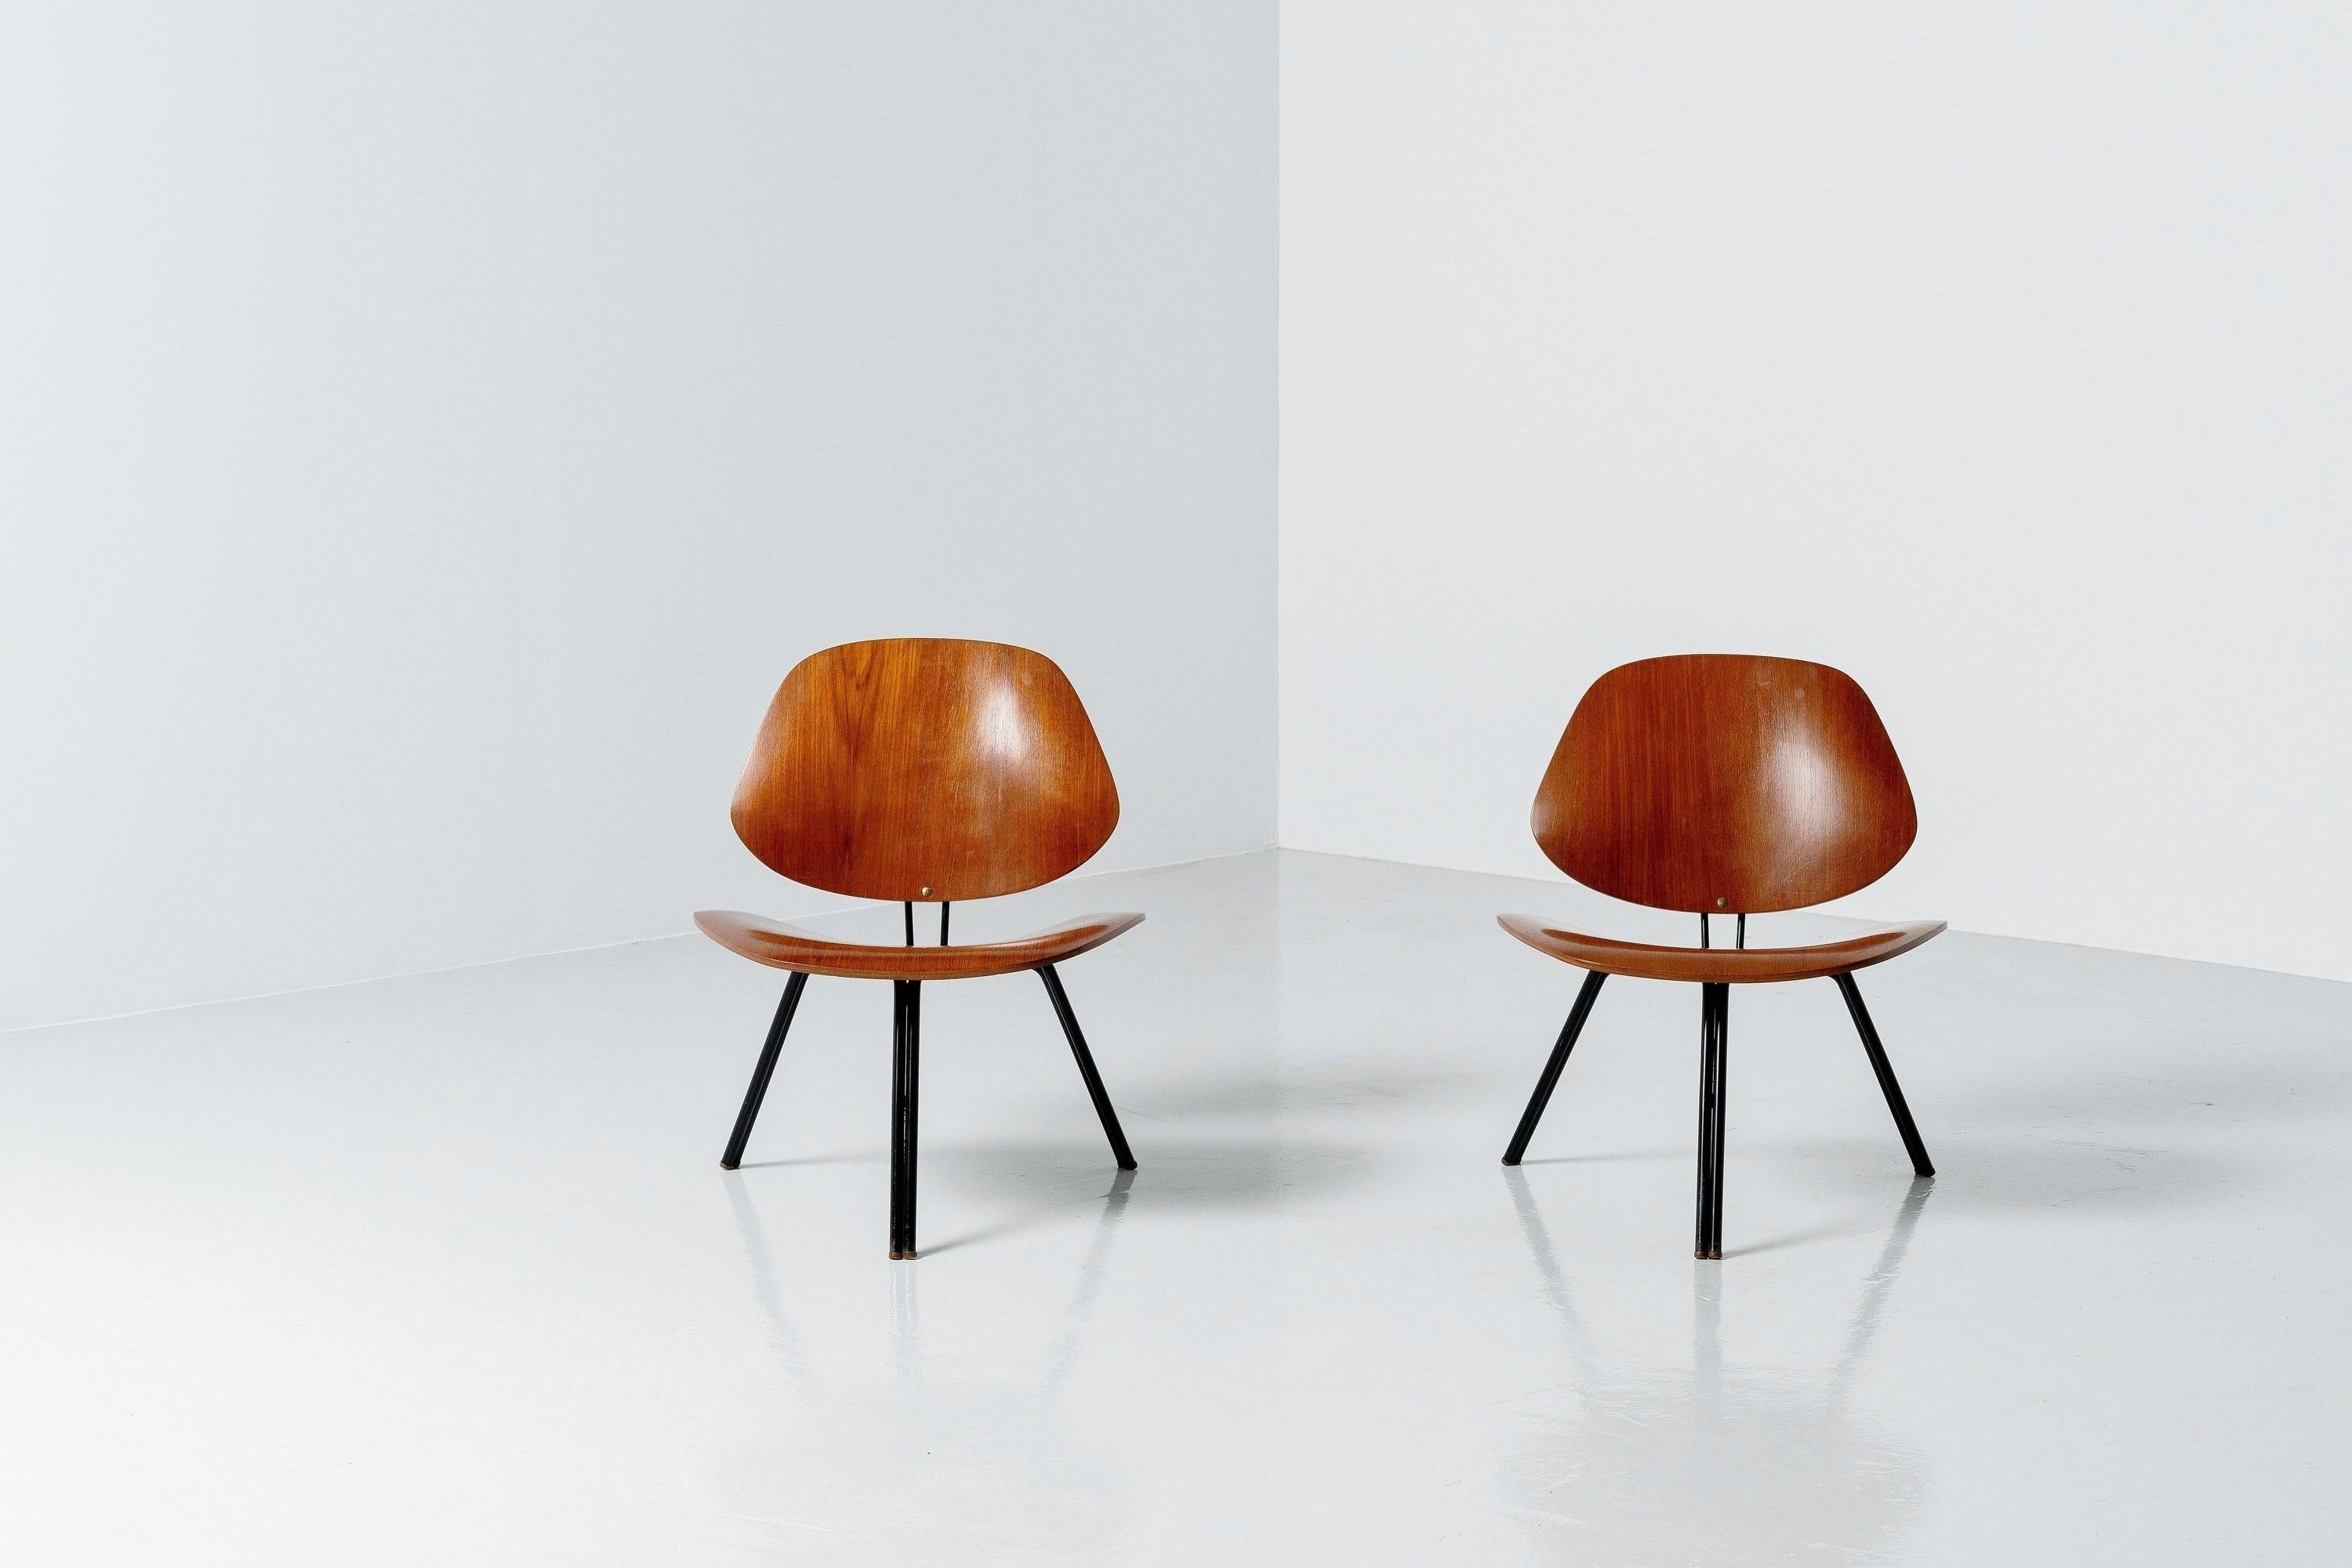 Schöner und seltener Satz von 4 P31 Stühlen von Osvaldo Borsani und hergestellt in Italien von Tecno im Jahr 1957. Die Stühle sind in einem guten Originalzustand mit normalen Gebrauchsspuren und haben eine wunderbare Patina, die den Wert der Stühle